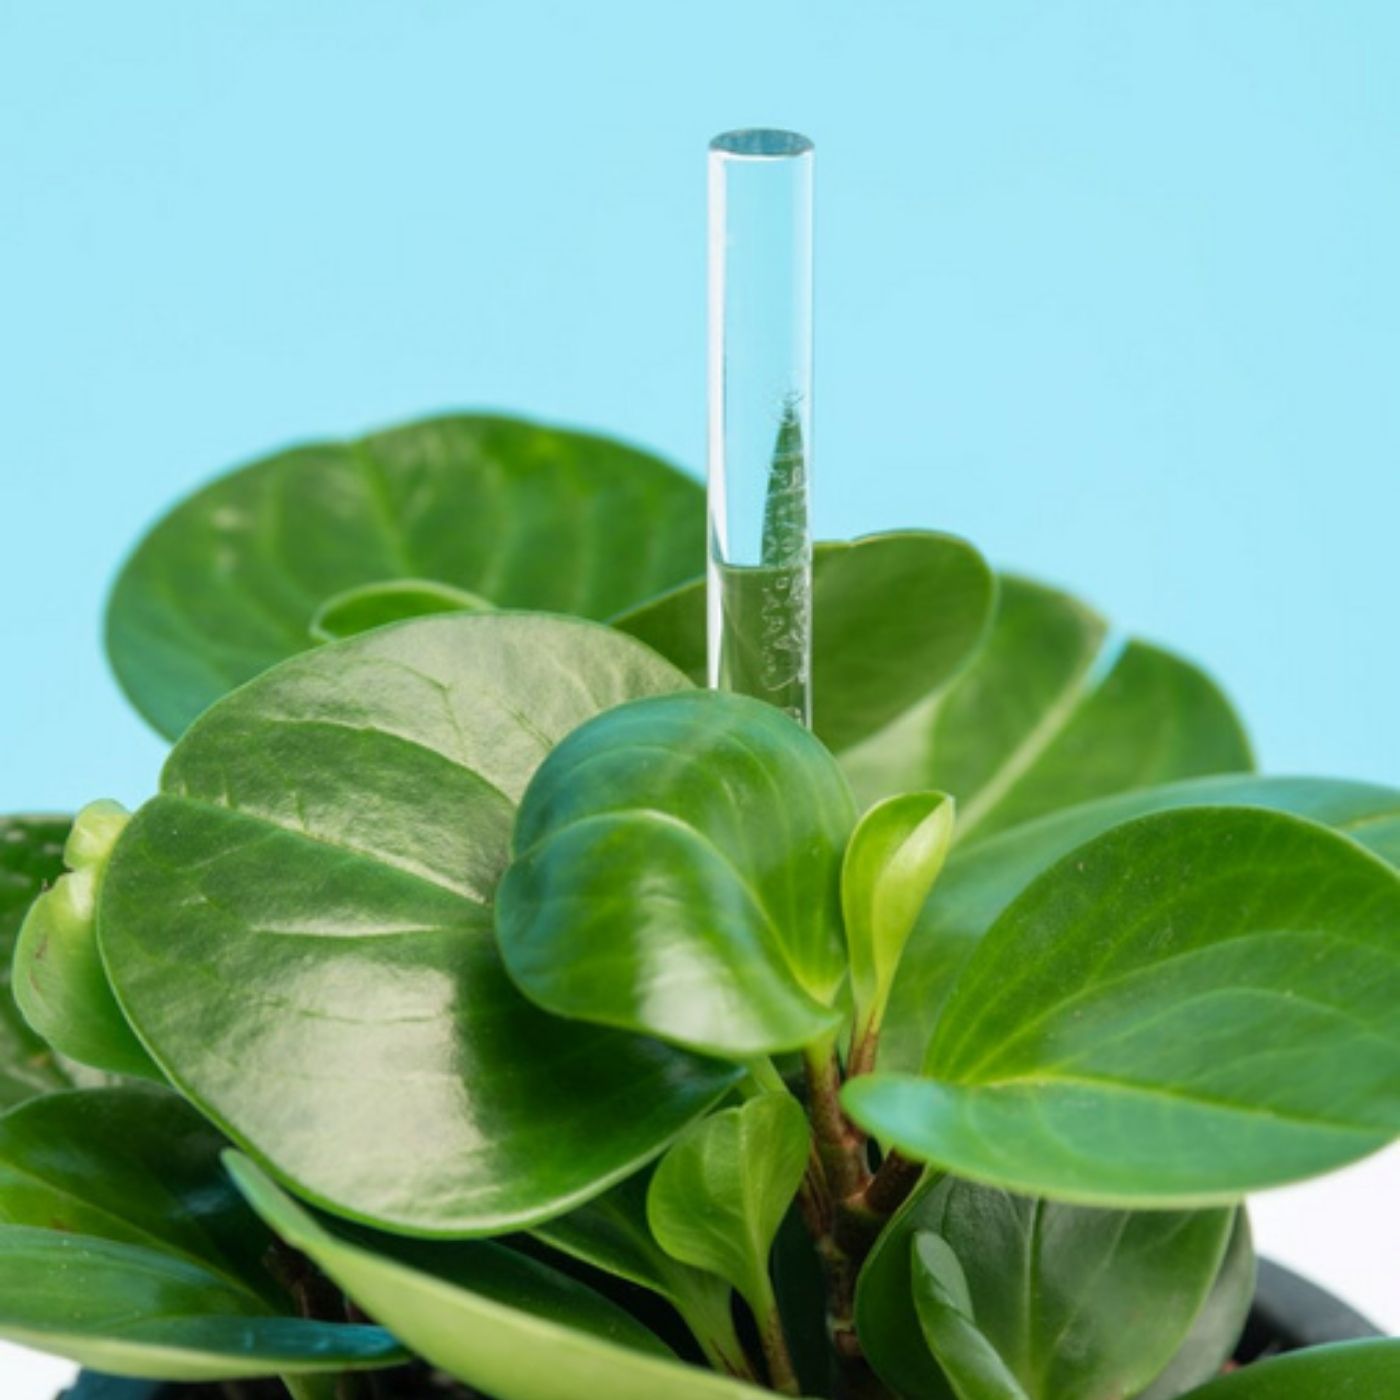 flaska green varilla de vidrio programado para estructurar el agua de tus plantas, junto con una planta de hojas verdes plantada en el macetero. fondo azul.